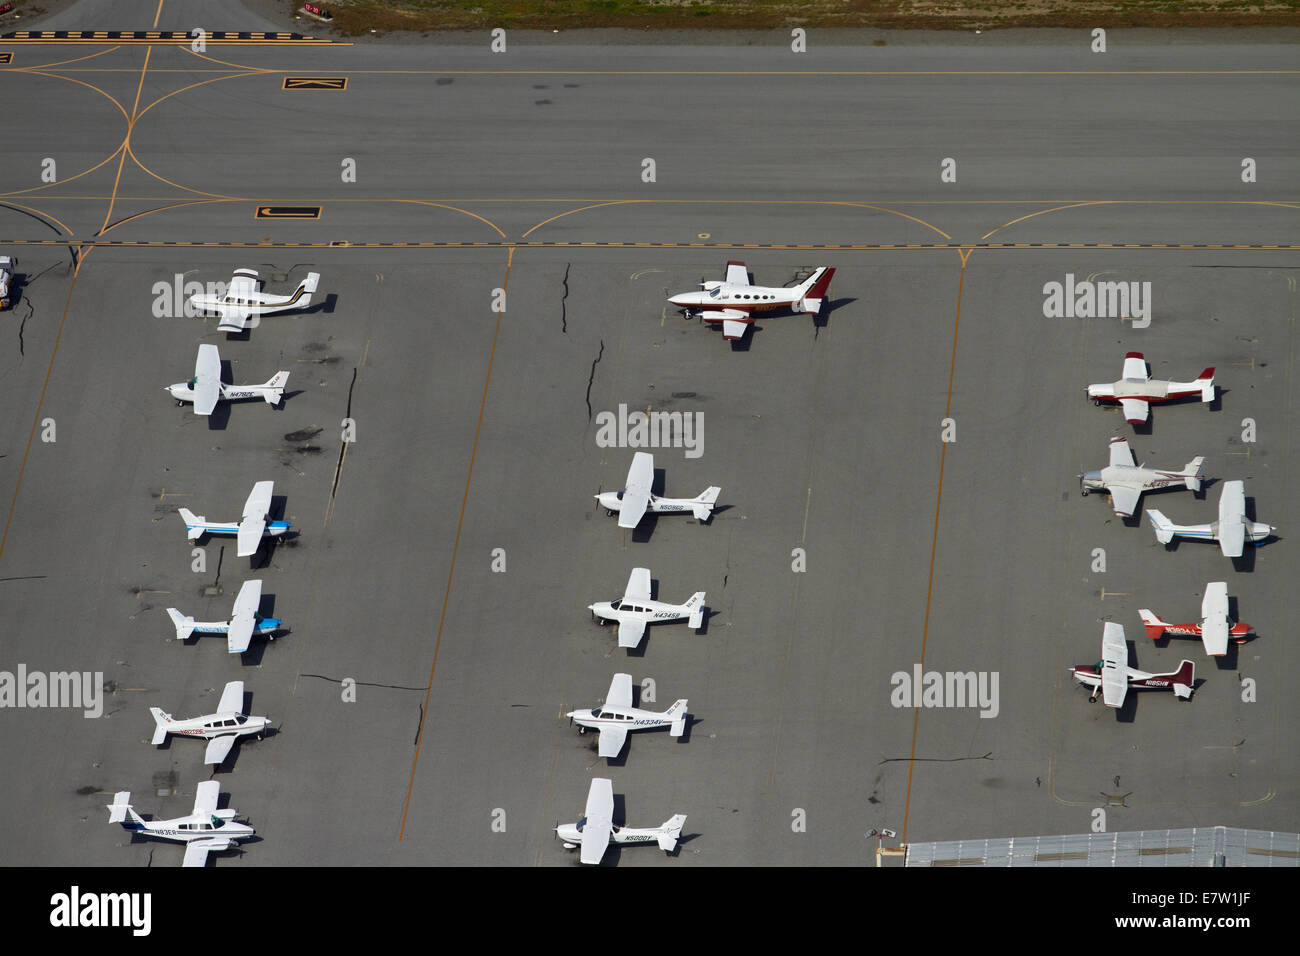 Les avions légers, garée à l'aéroport de San Carlos, San Francisco, Californie, USA - vue aérienne Banque D'Images